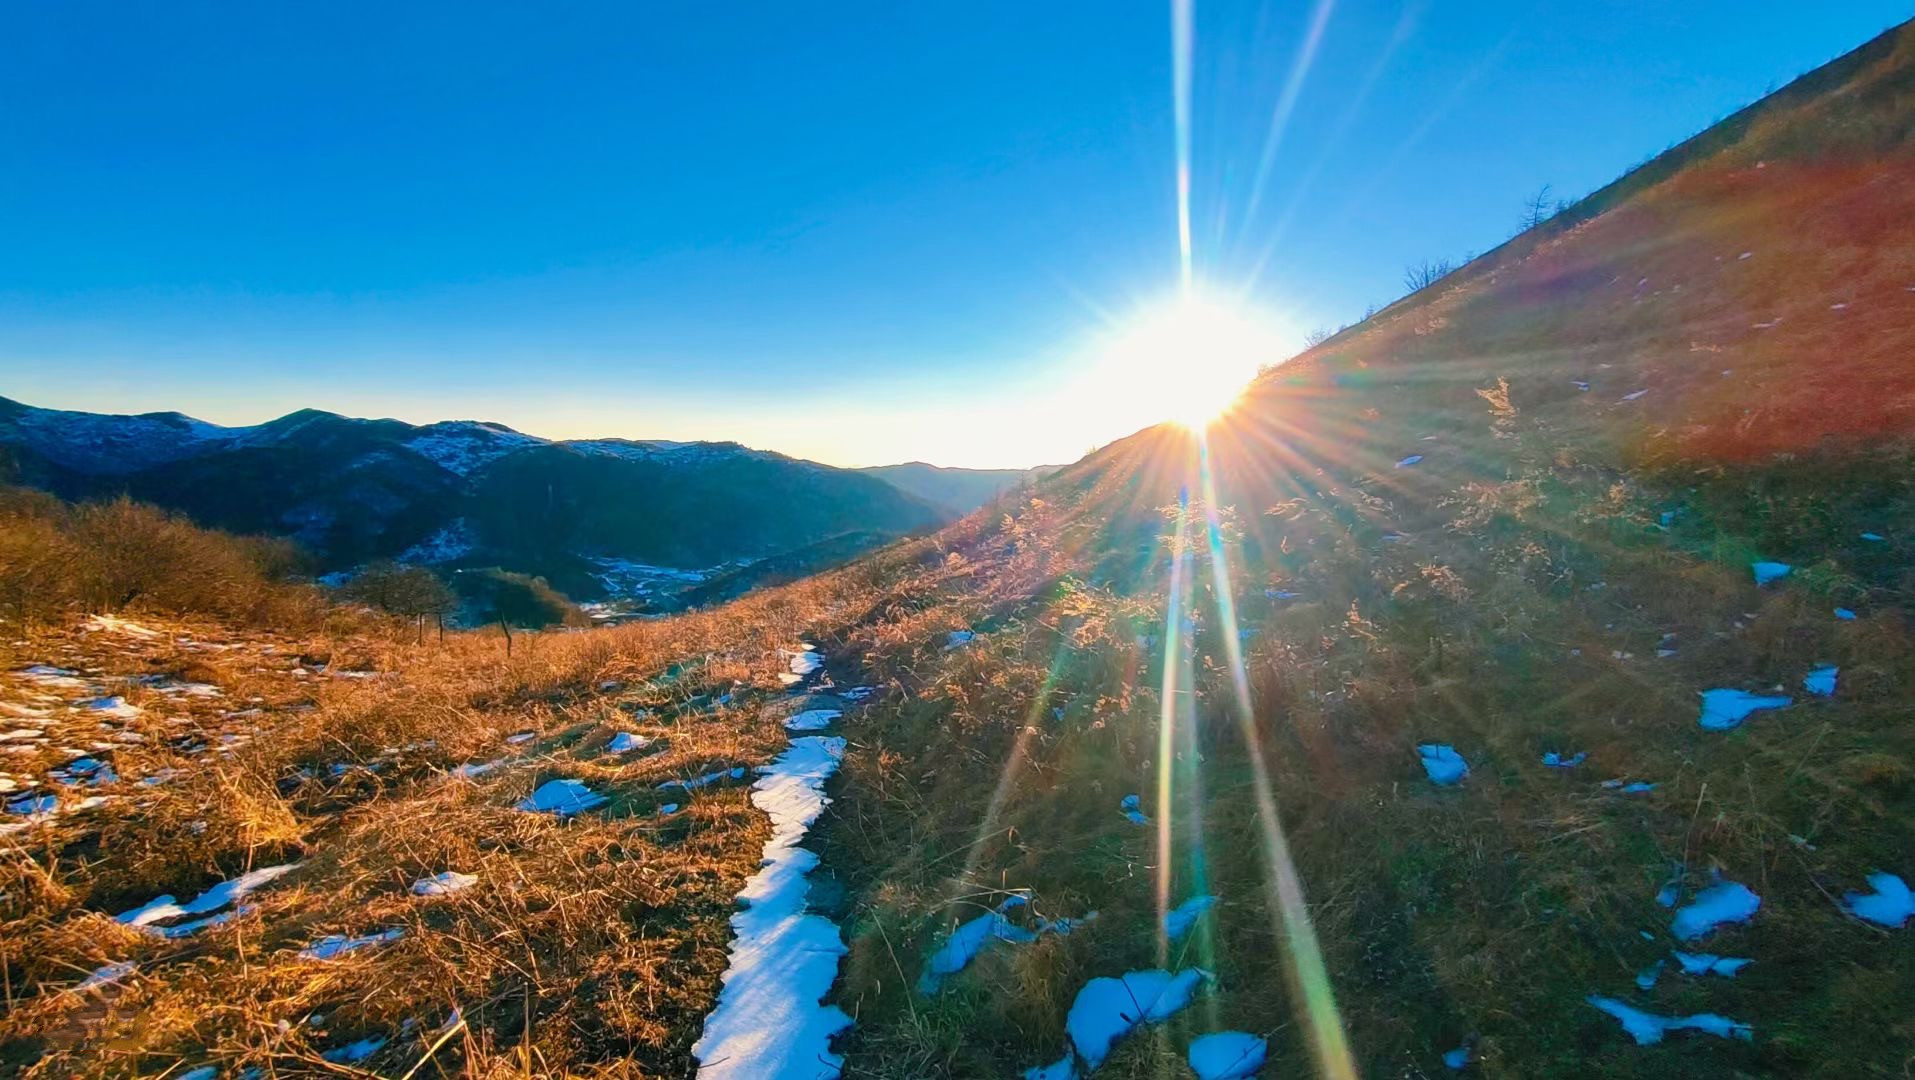 金灿灿的阳光洒向大地,白雪深深浅浅地覆盖着高山草甸,沐浴阳光,折射